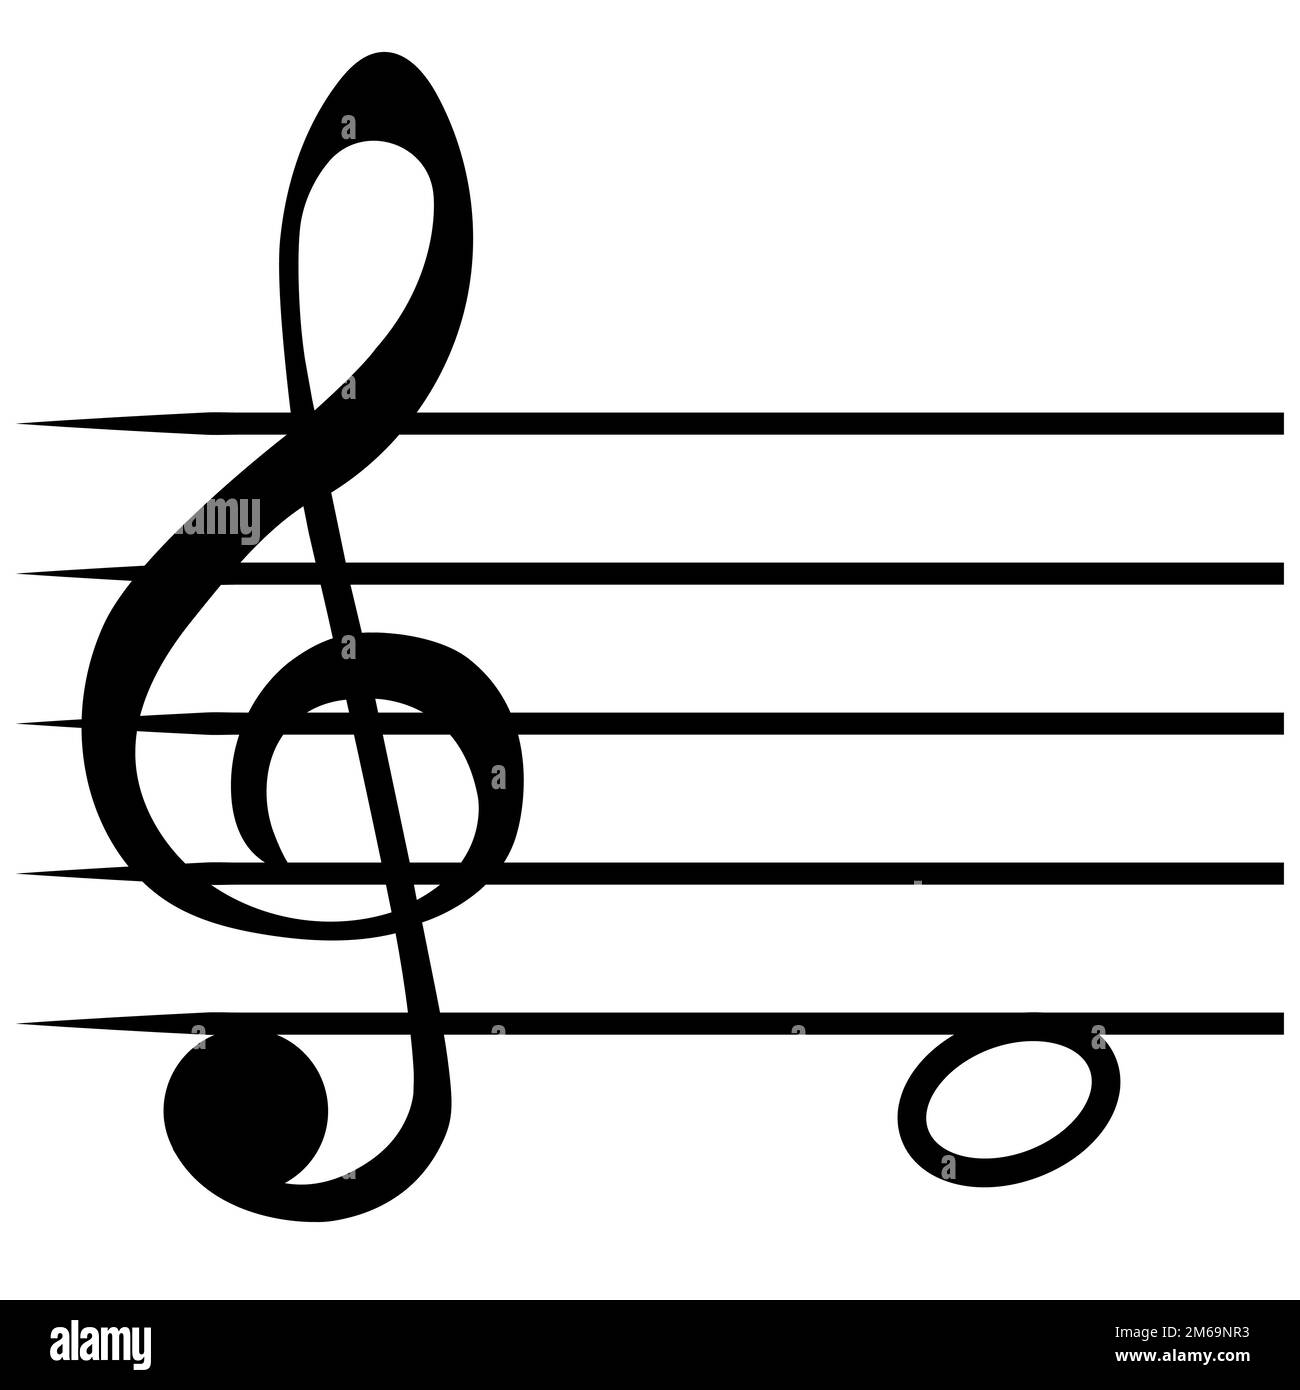 Nota re linee di staff musicale, D clef solfeggio non Illustrazione Vettoriale